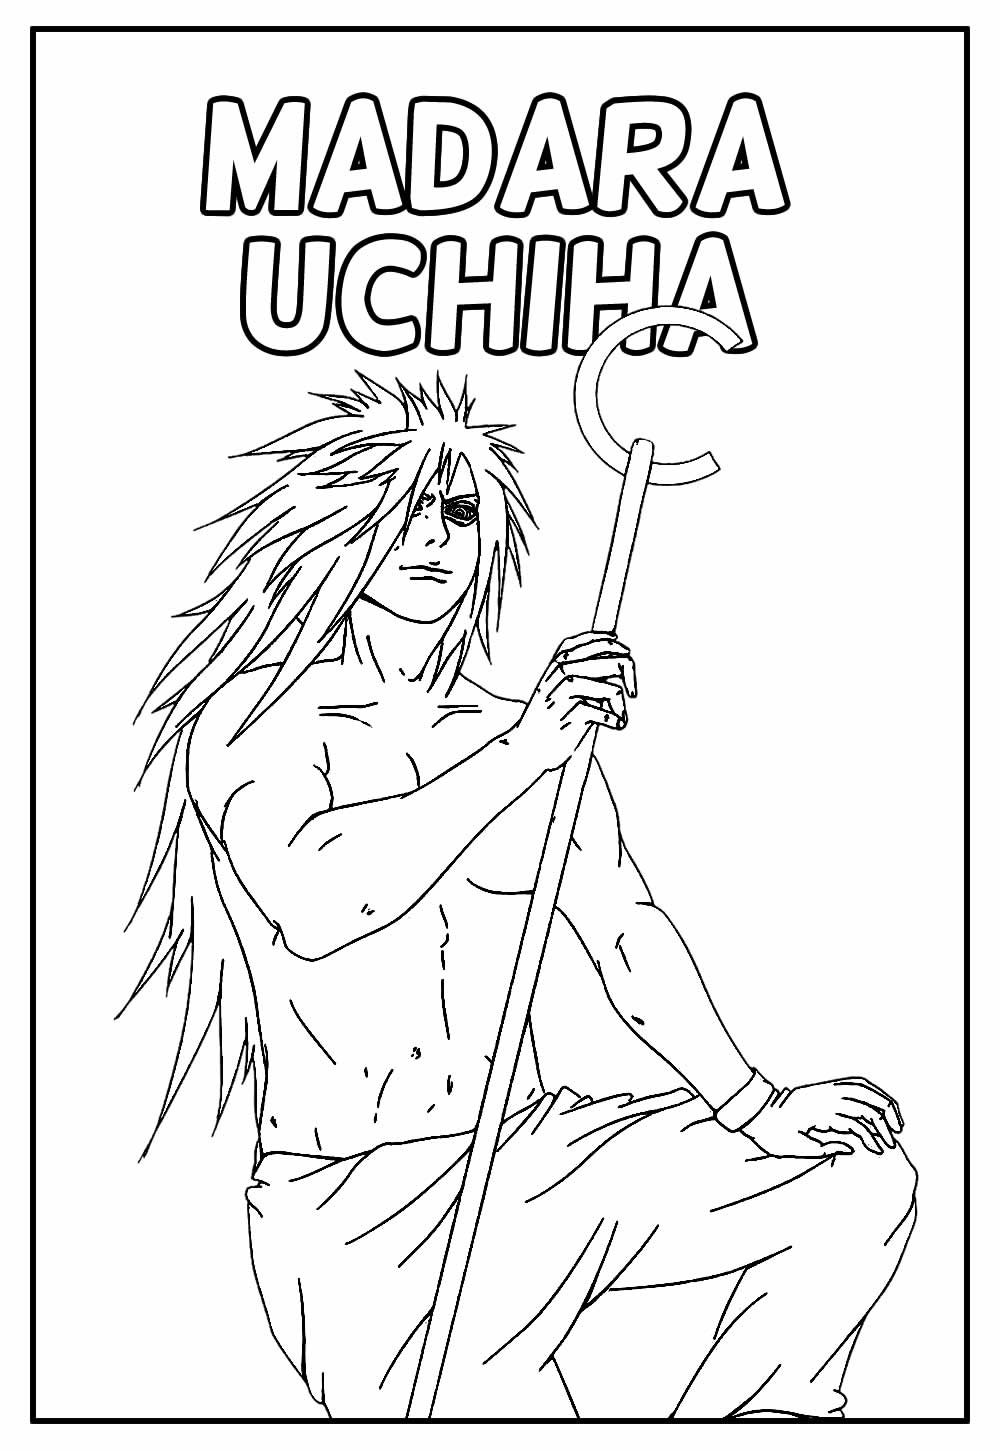 Desenho Educativo de Naruto a para colorir - Madara Uchiha